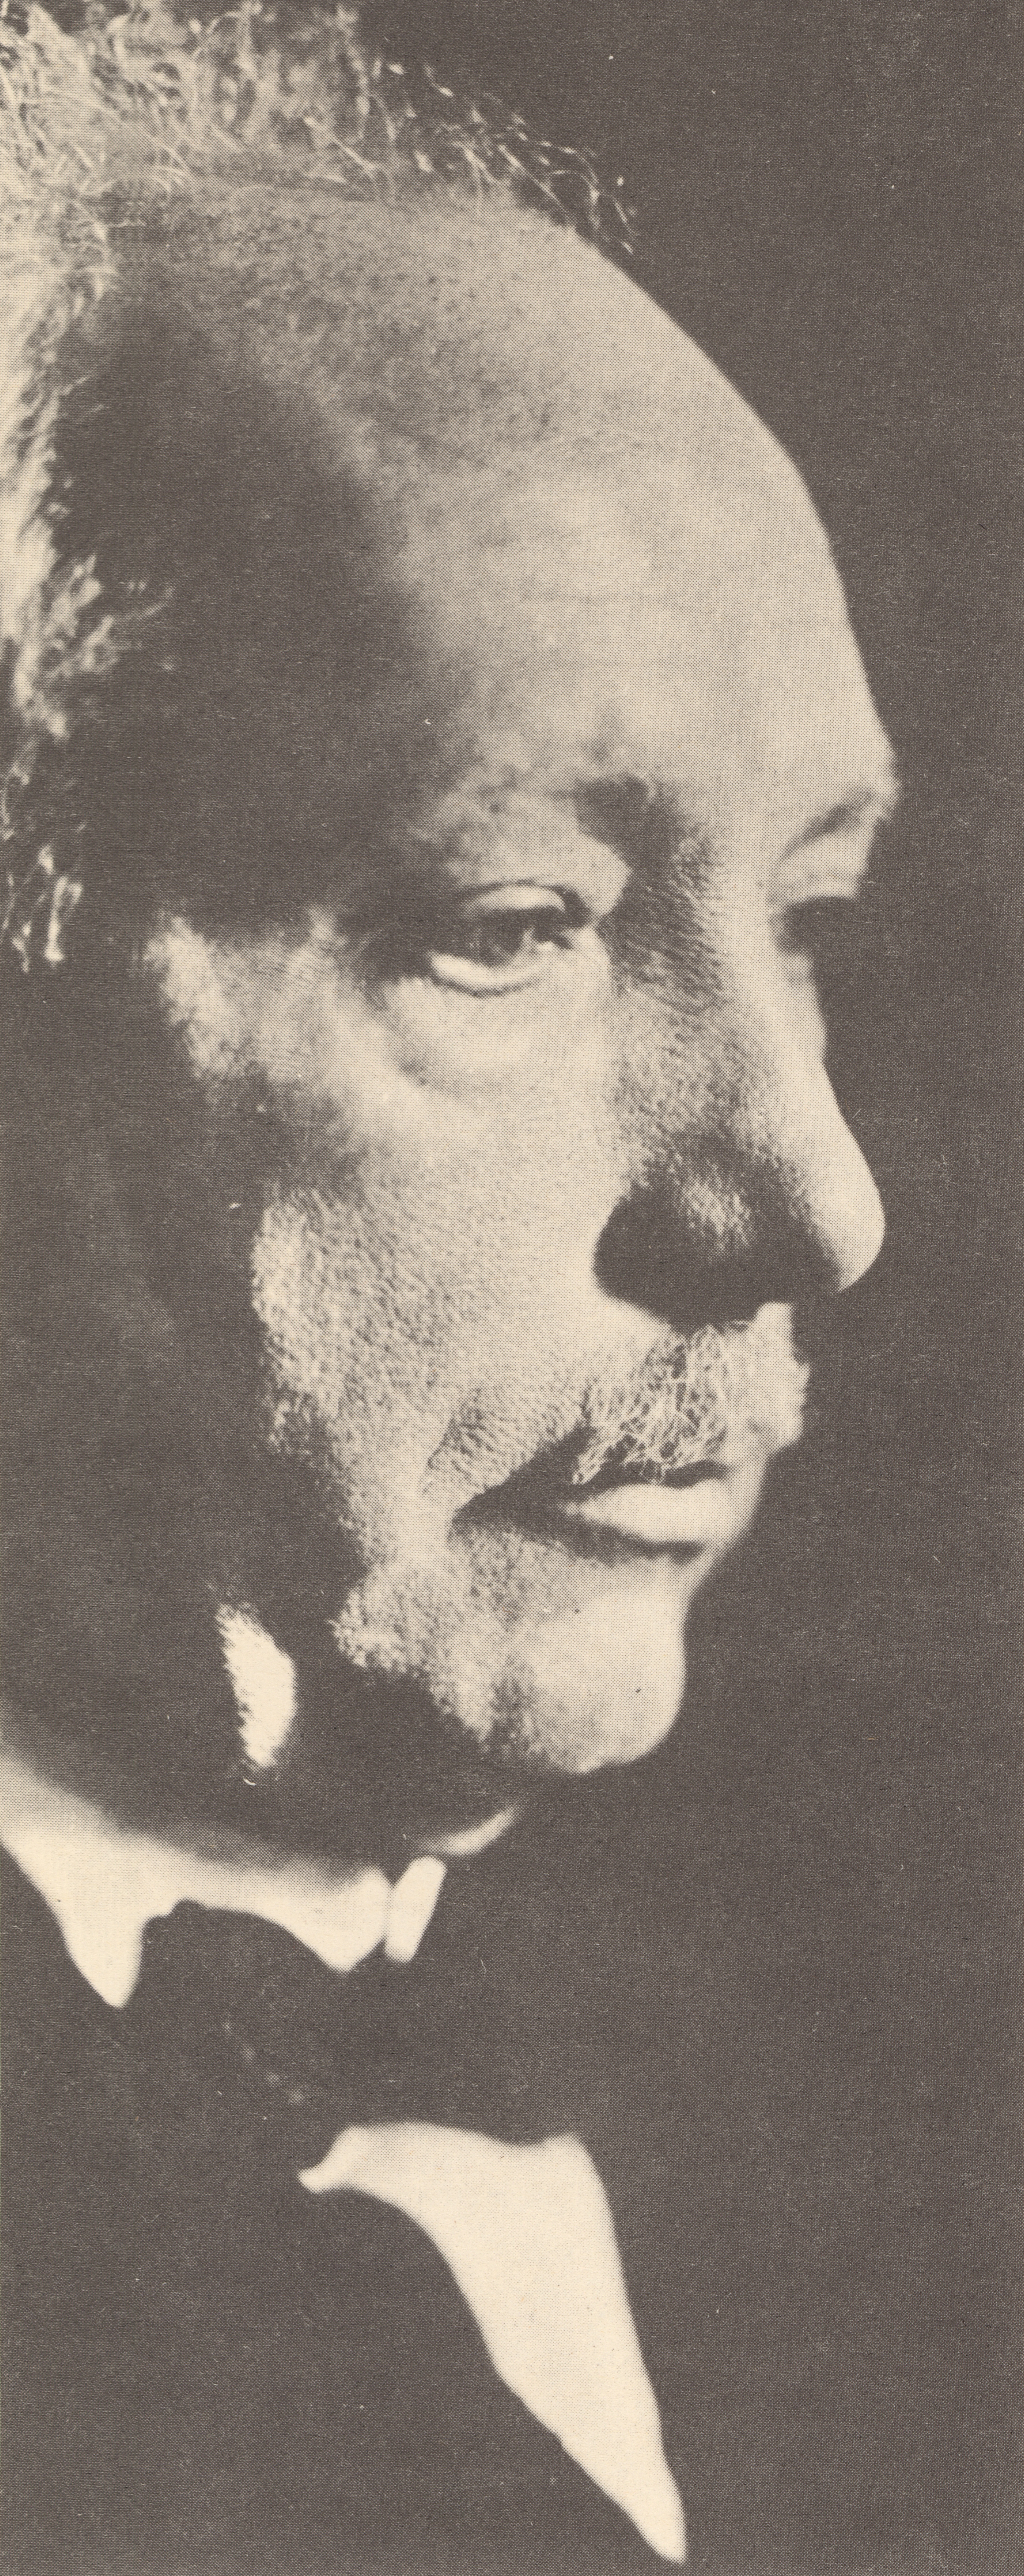 Richard STRAUSS, portrait publié entre autres sur le disque LHMV 19